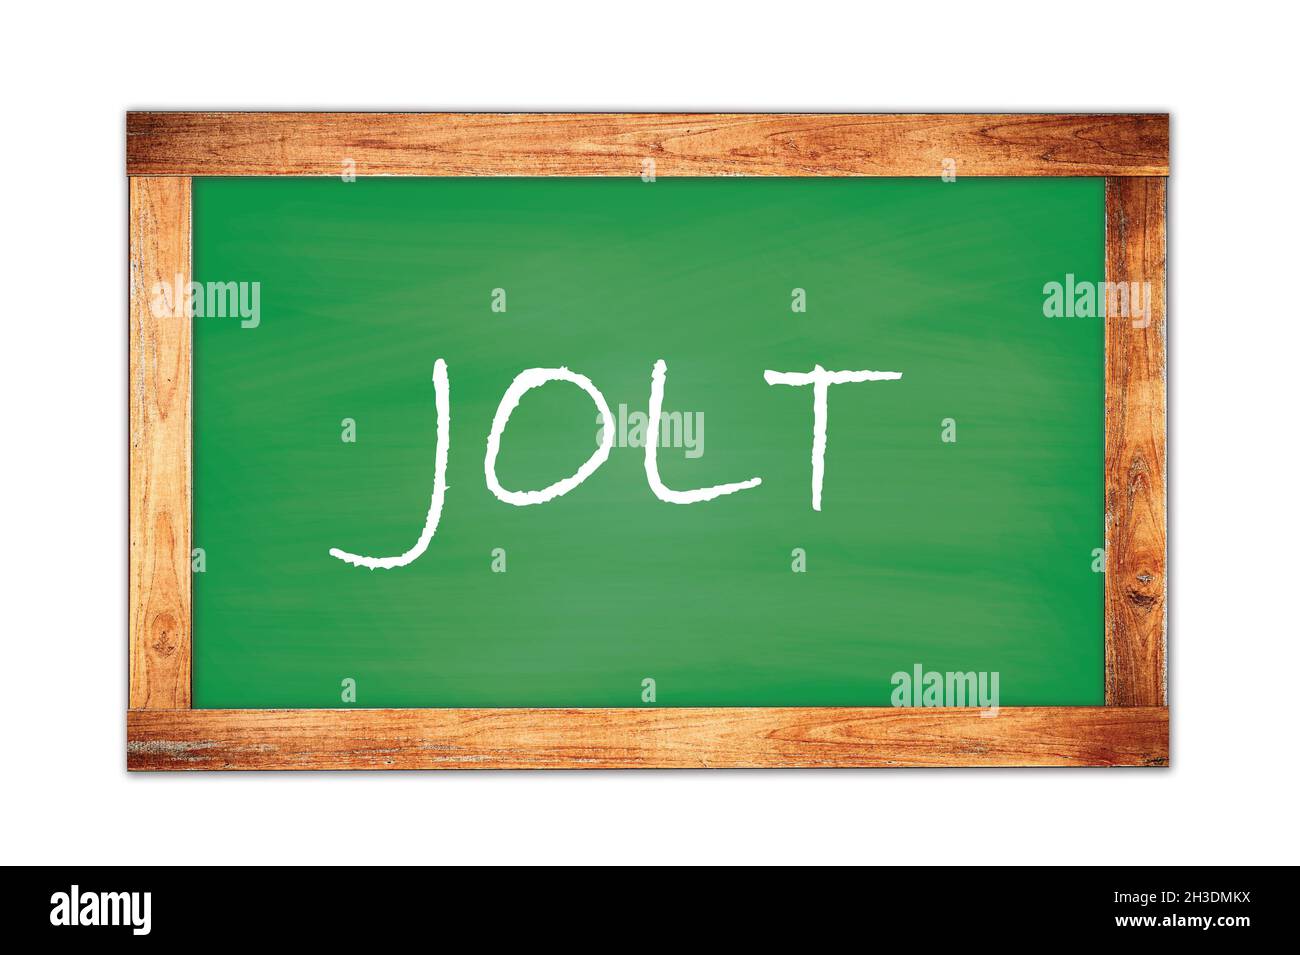 JOLT text written on green wooden frame school blackboard. Stock Photo